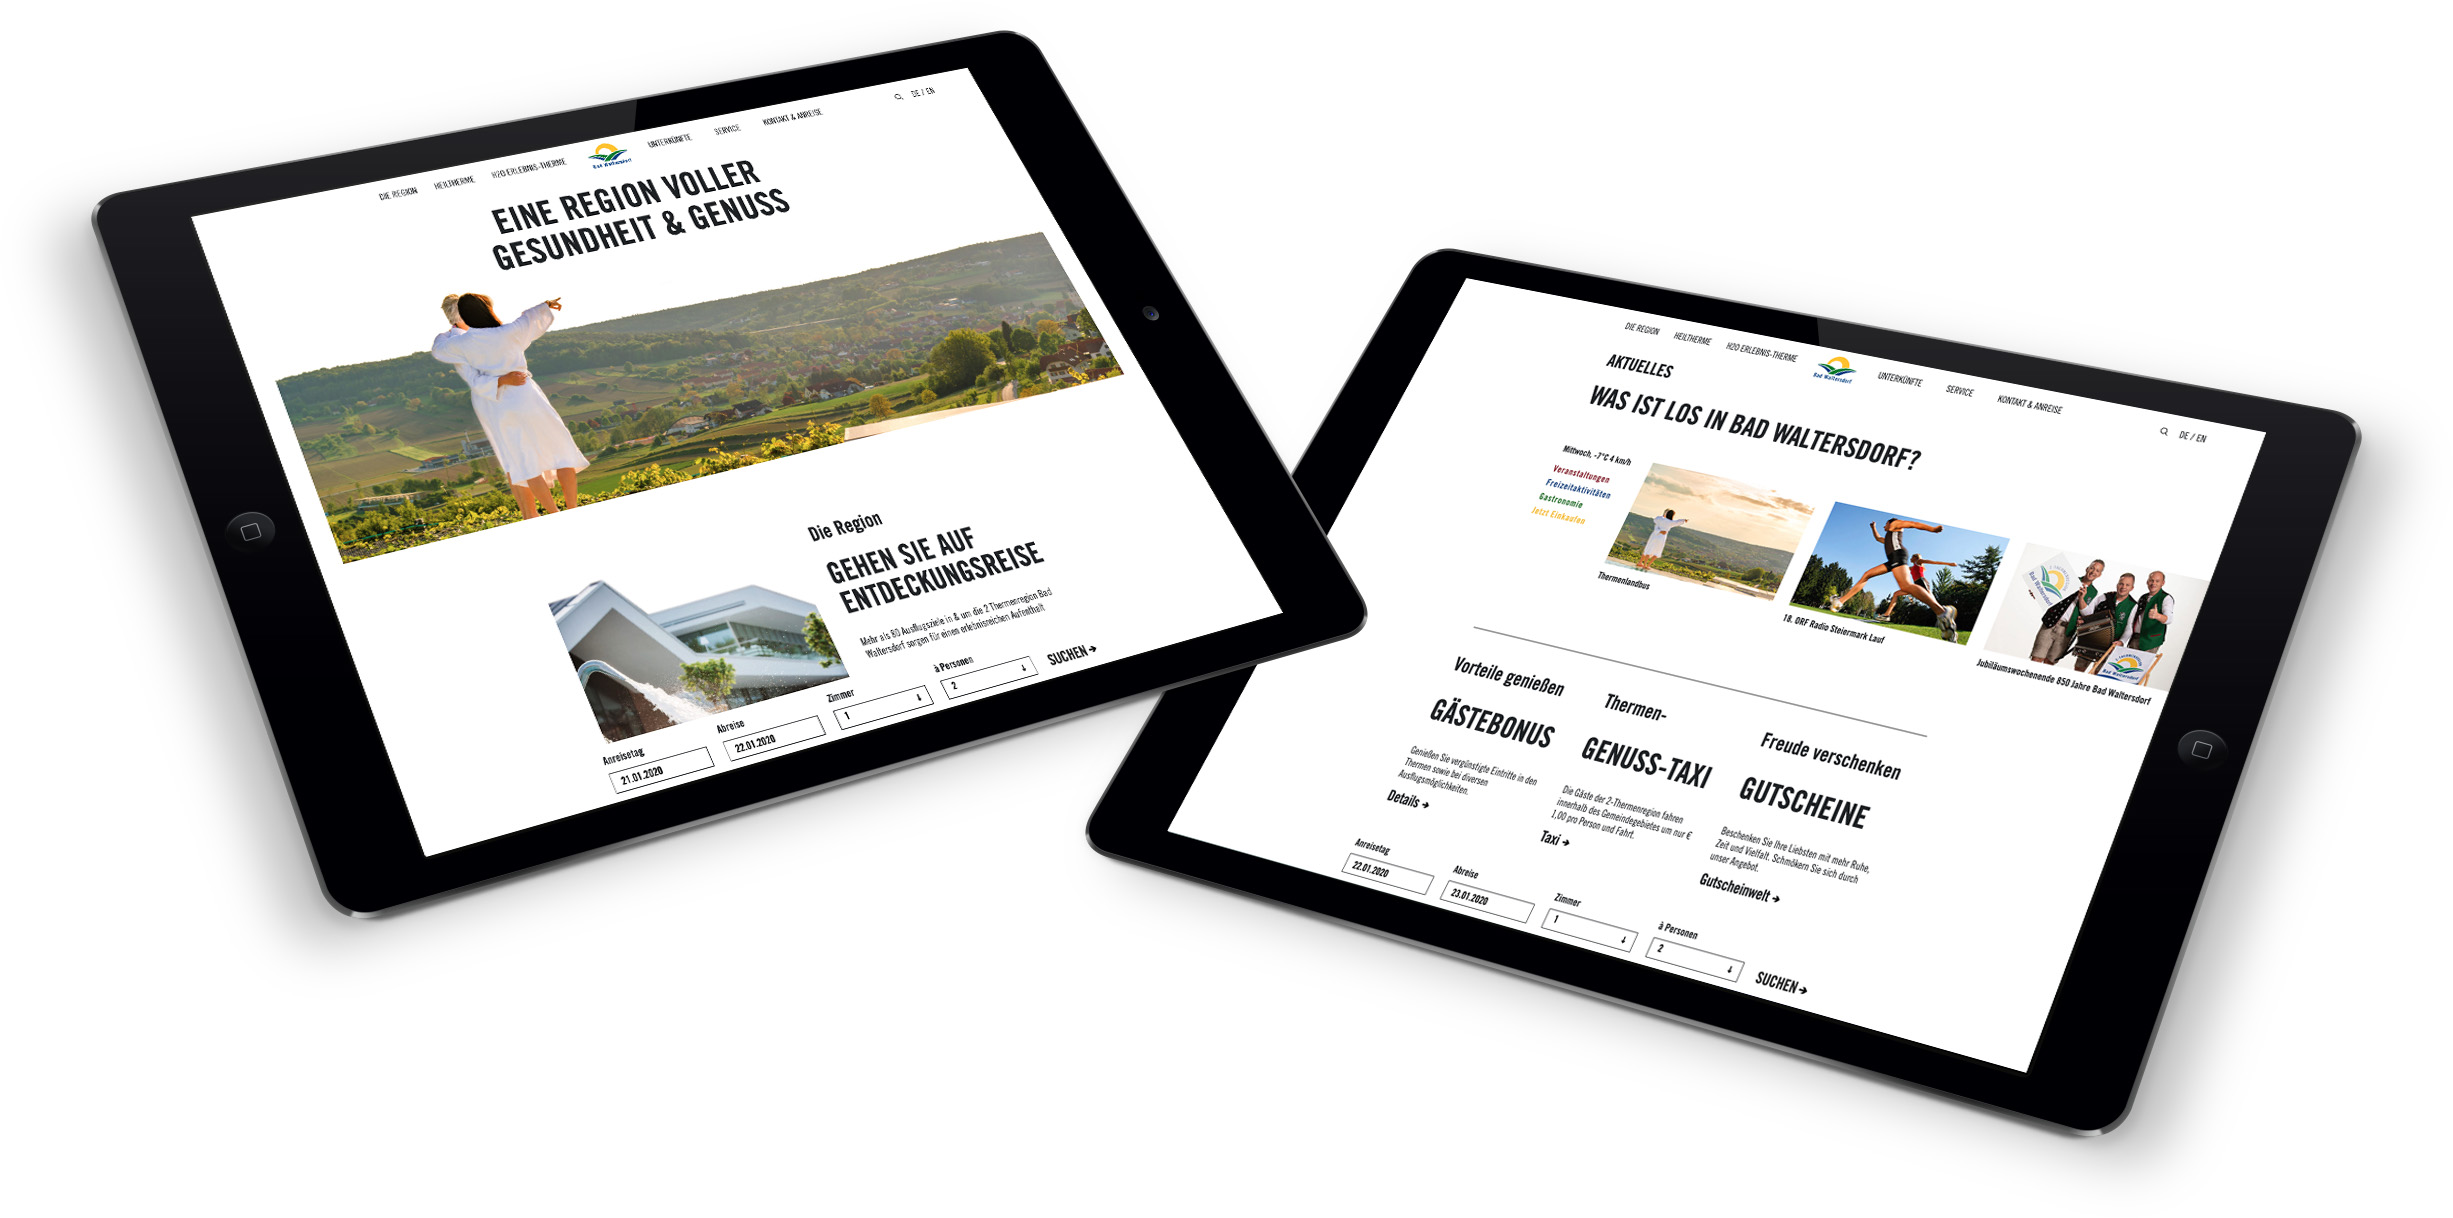 Zwei Tablets mit der Webseite der Tourismusregion Bad Waltersdorf